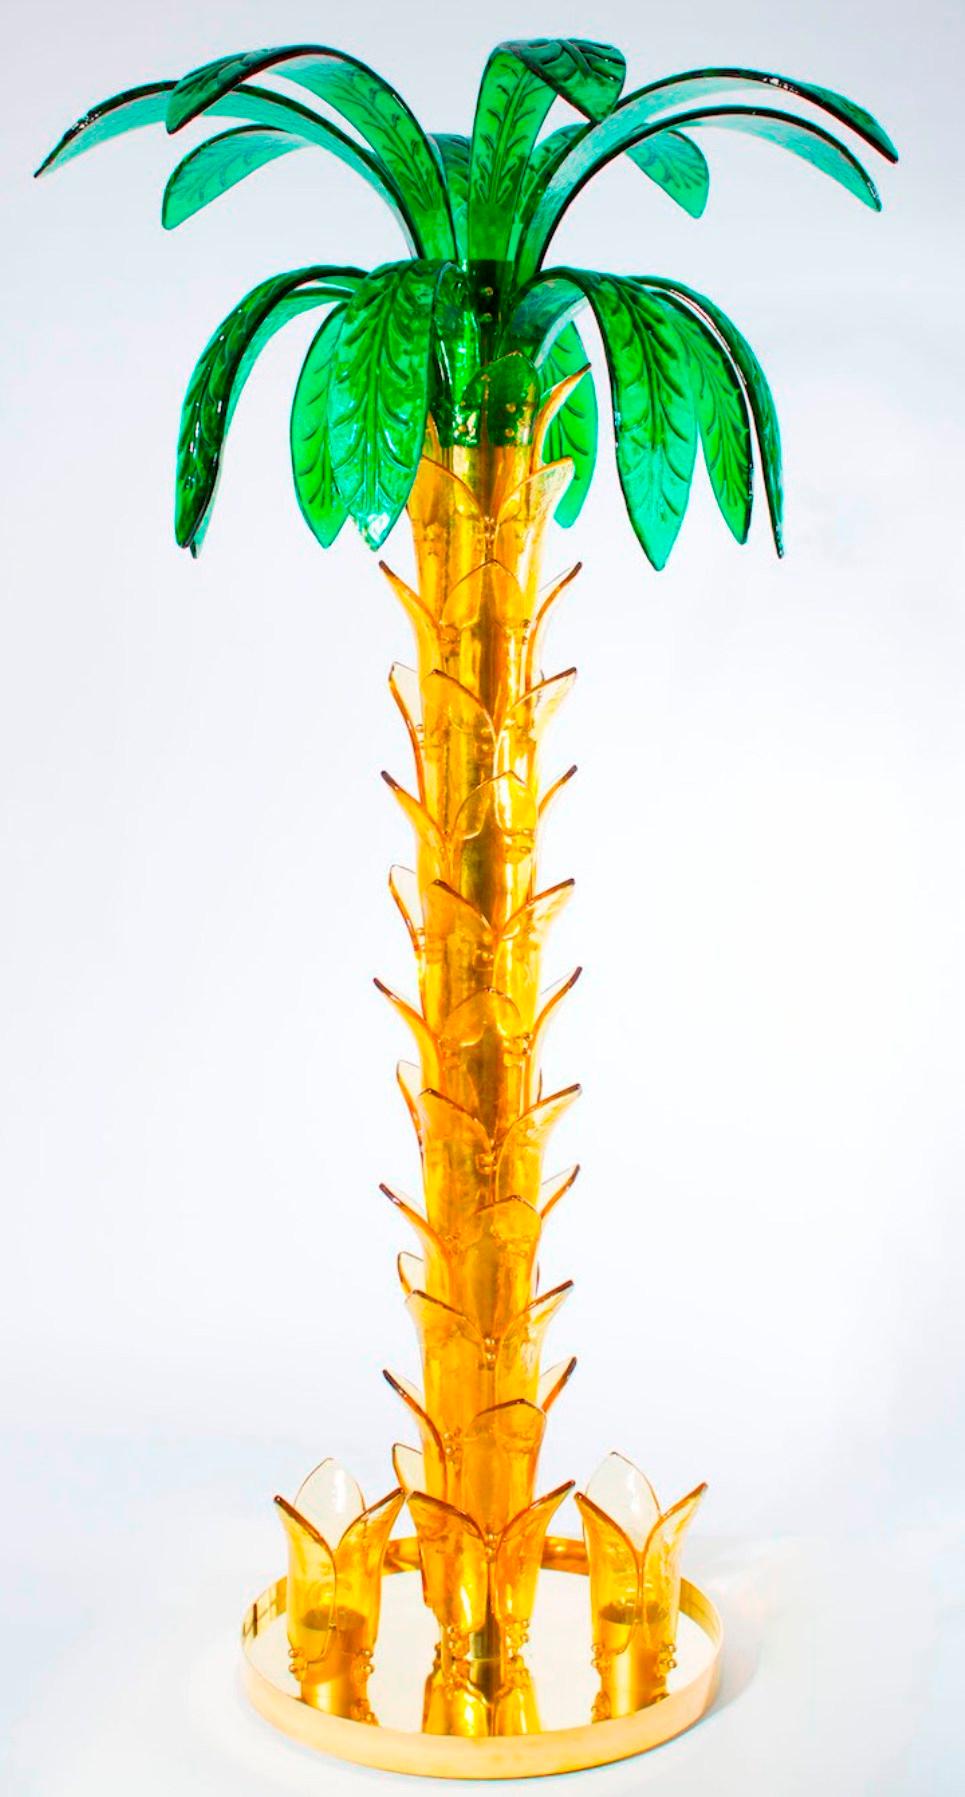 Lampadaire Palm en verre de Murano ambre et vert vintage Murano Gallery, Contemporain, 21ème siècle
Lampadaire italien en forme de palmier en verre soufflé de Murano, couleur ambre et vert, à 4 lumières.
À la base de ce lampadaire haut et élégant,